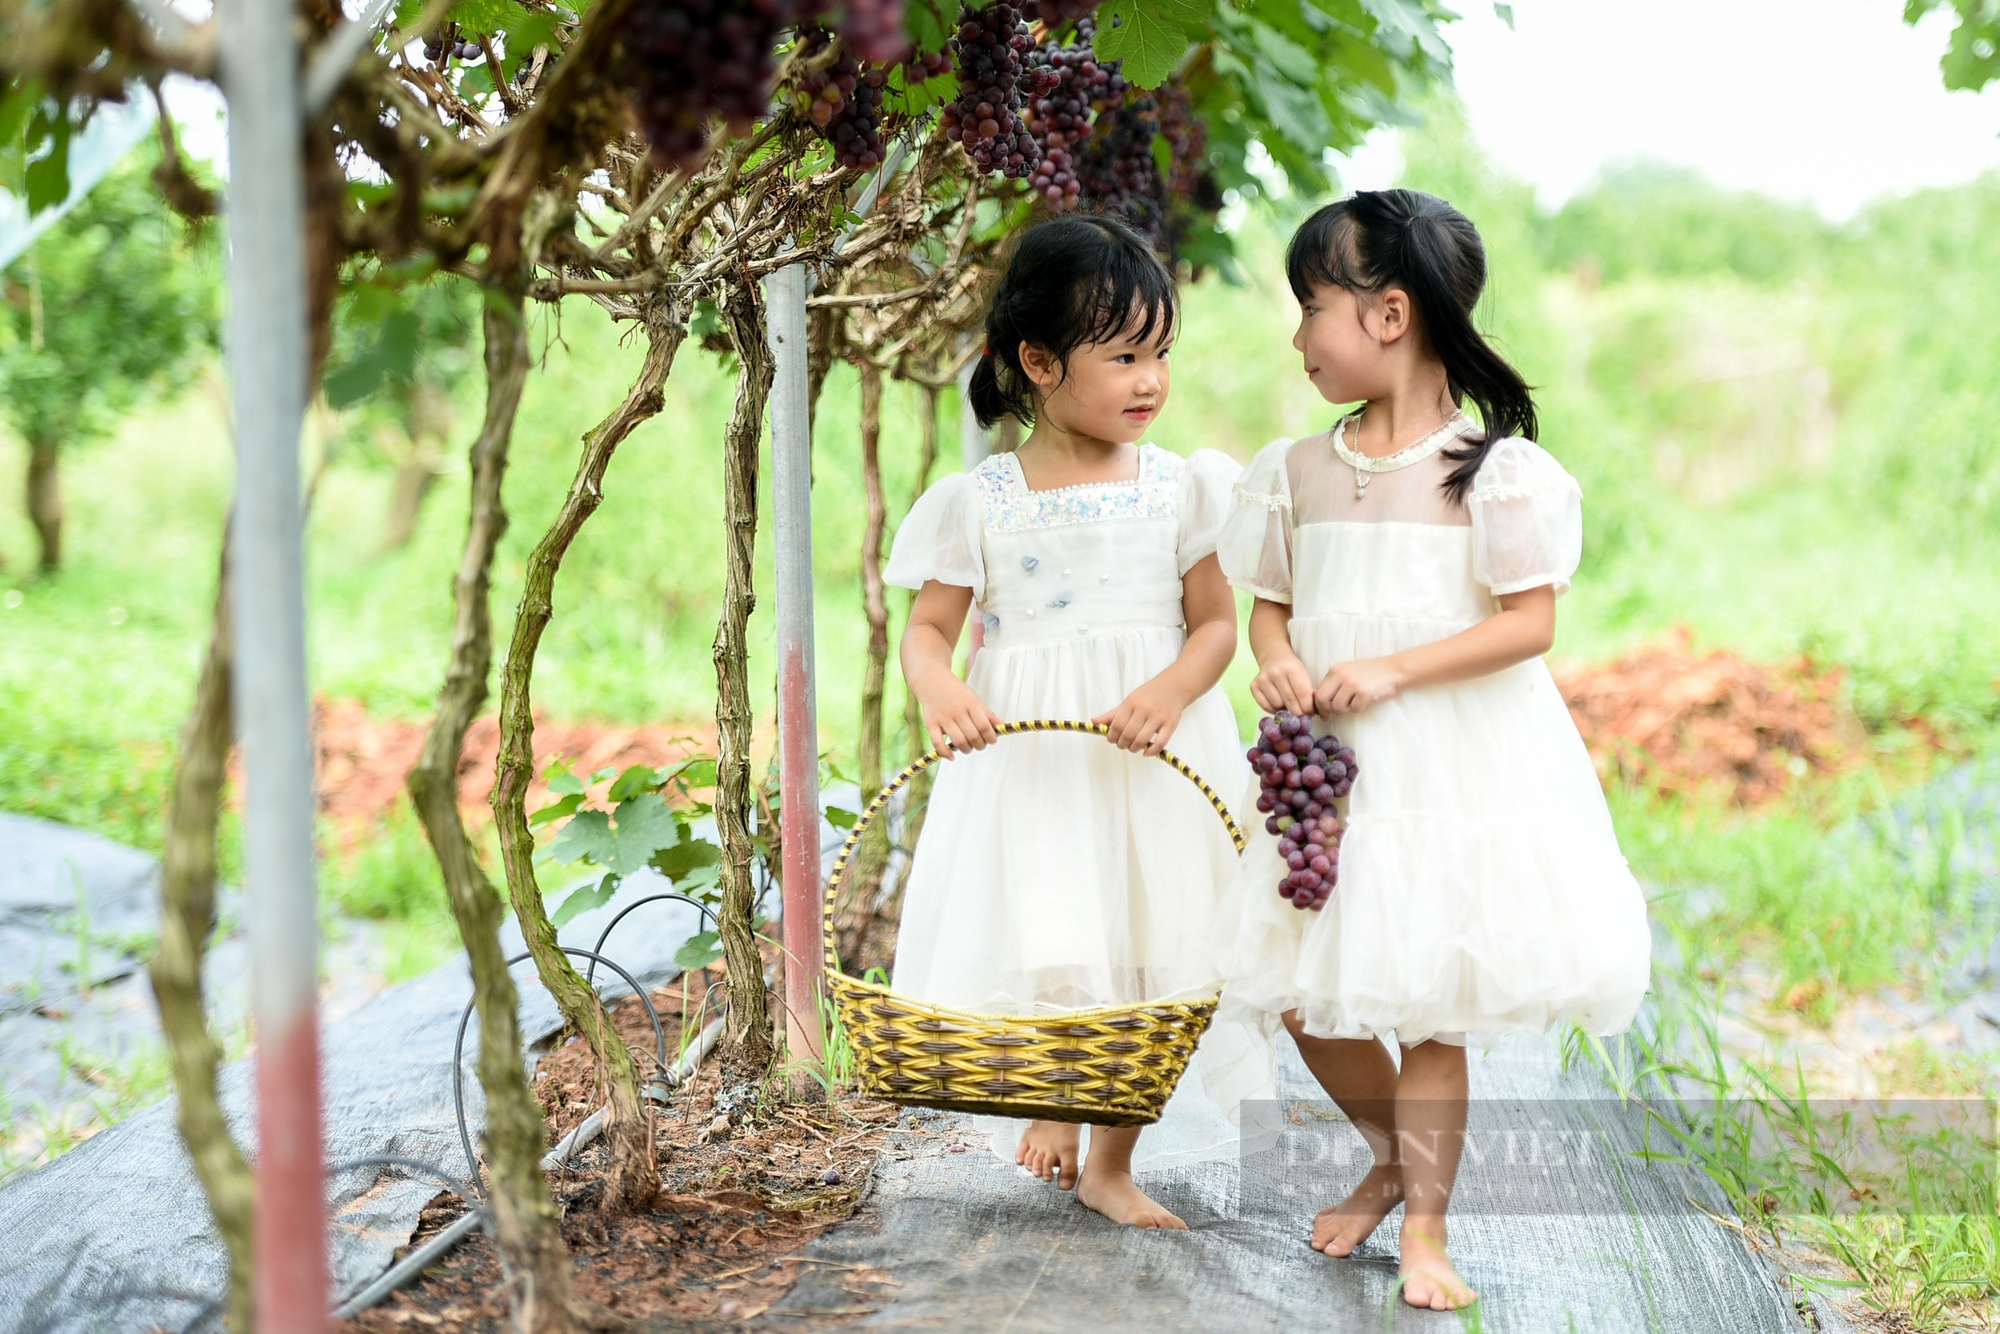 Vườn nho hạ đen trĩu quả ở ngoại thành Hà Nội thu hút người dân đến check-in mỗi ngày- Ảnh 11.